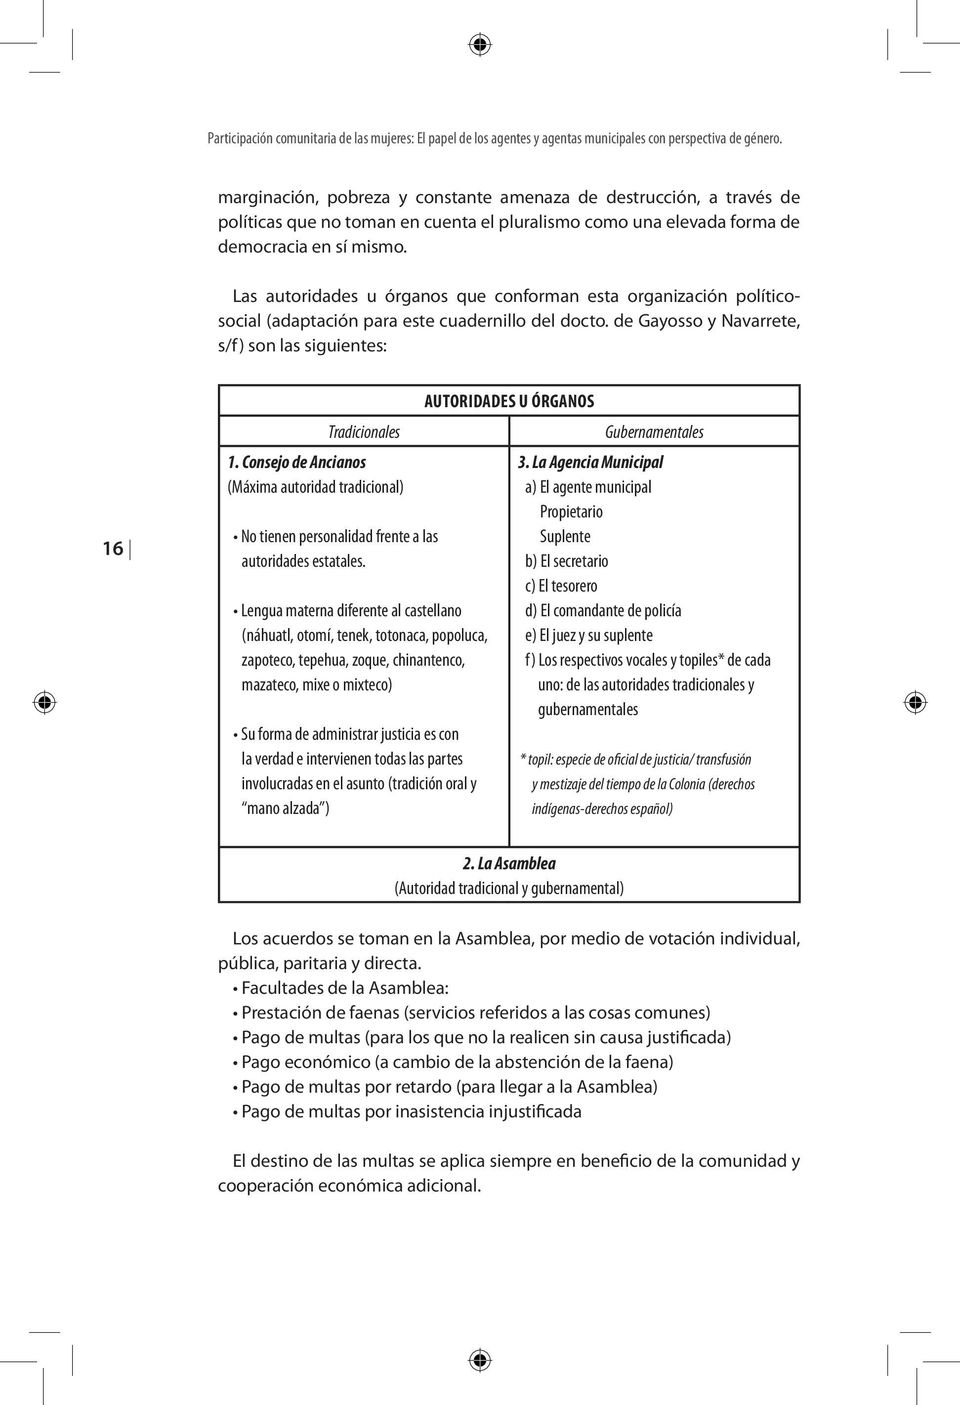 Las autoridades u órganos que conforman esta organización políticosocial (adaptación para este cuadernillo del docto. de Gayosso y Navarrete, s/f) son las siguientes: 16 Tradicionales 1.